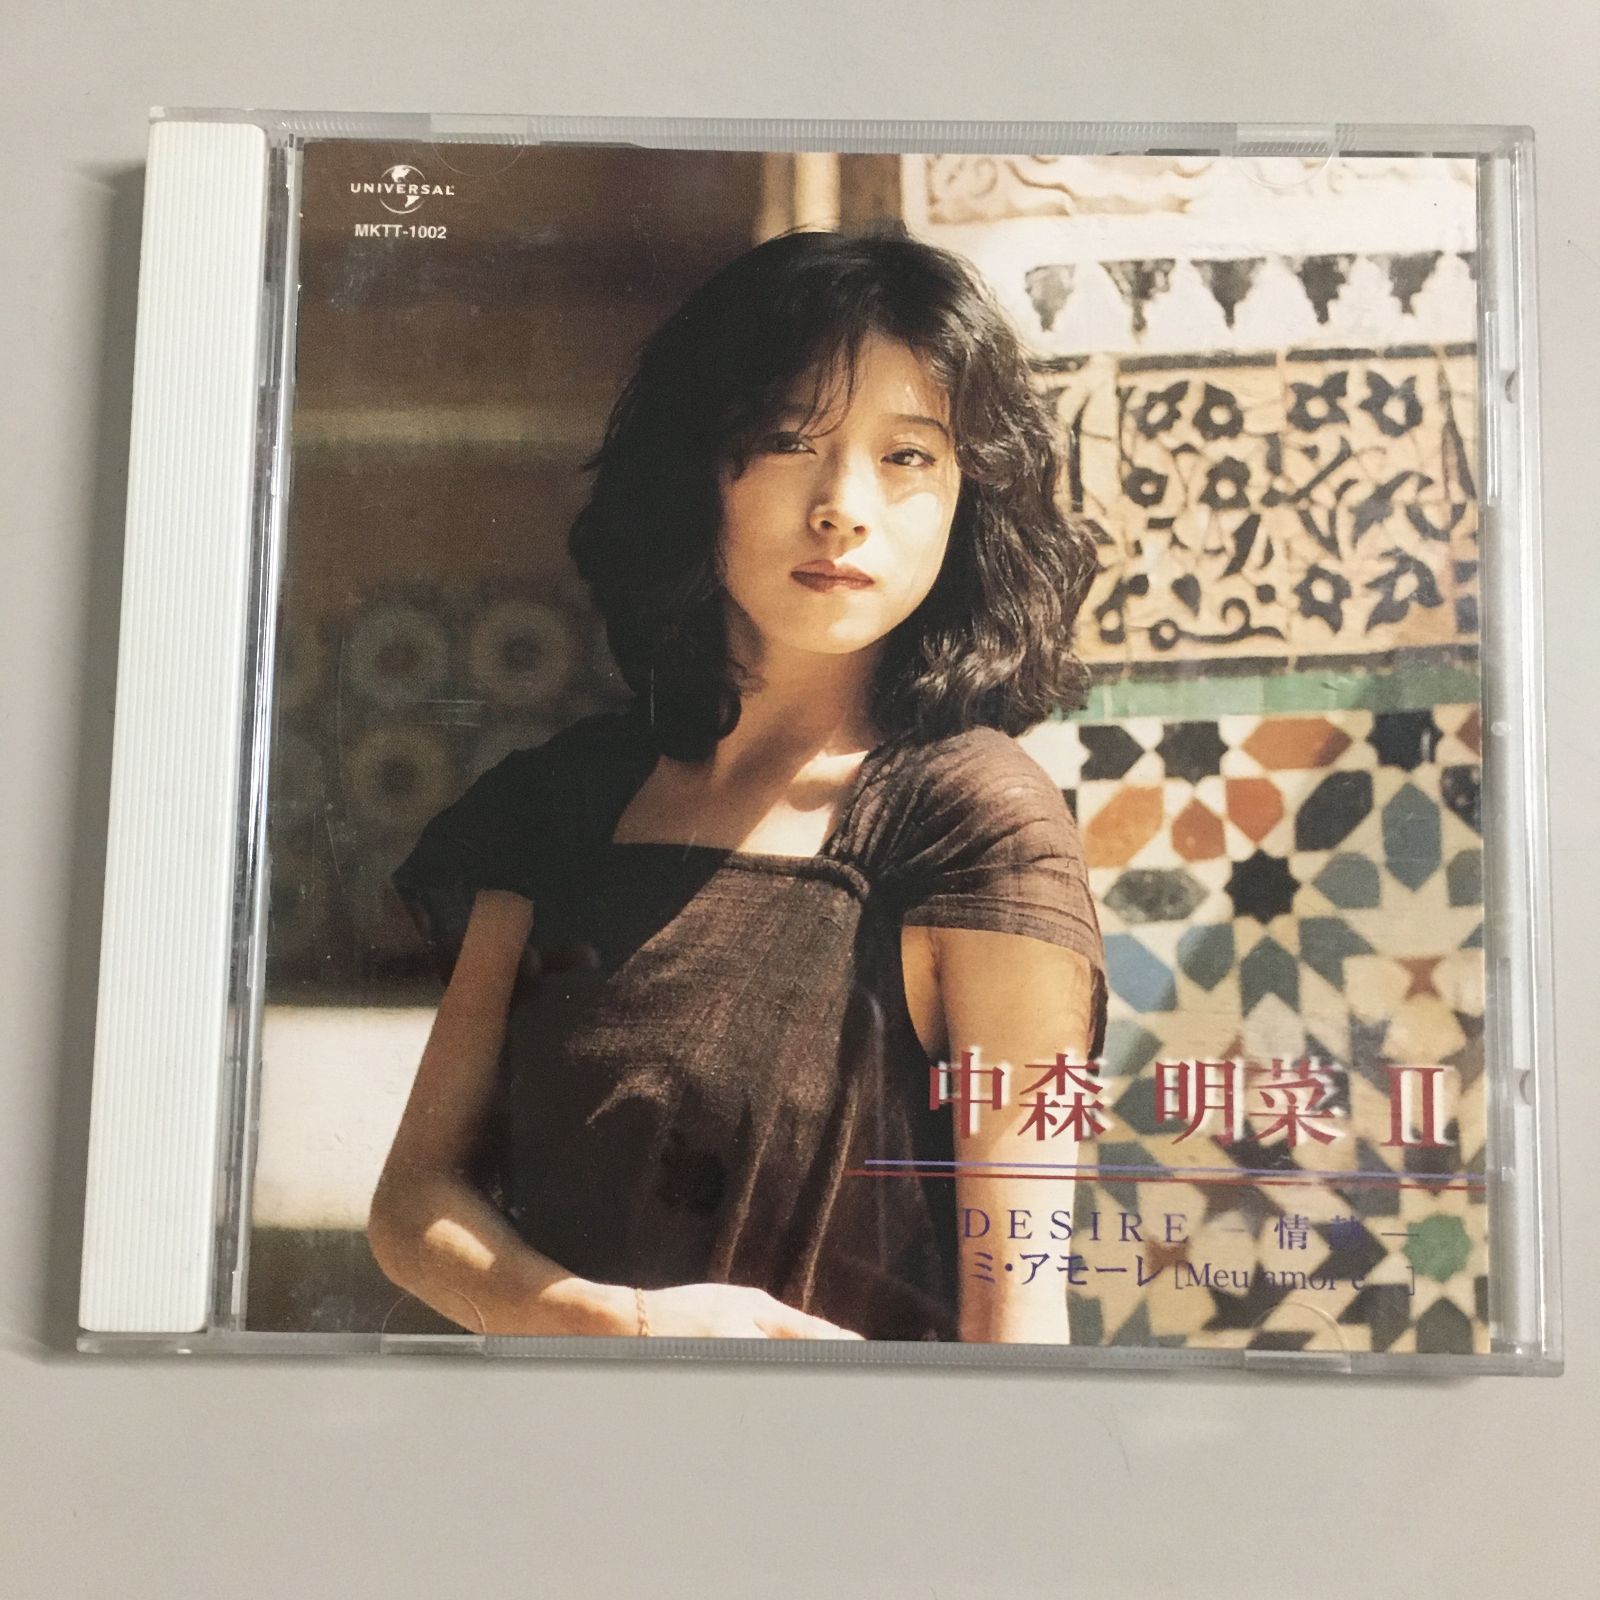 中森明菜 _2 アルバム CD DESIRE 情熱 ミ・アモーレ 他 MKTT-100_2CD